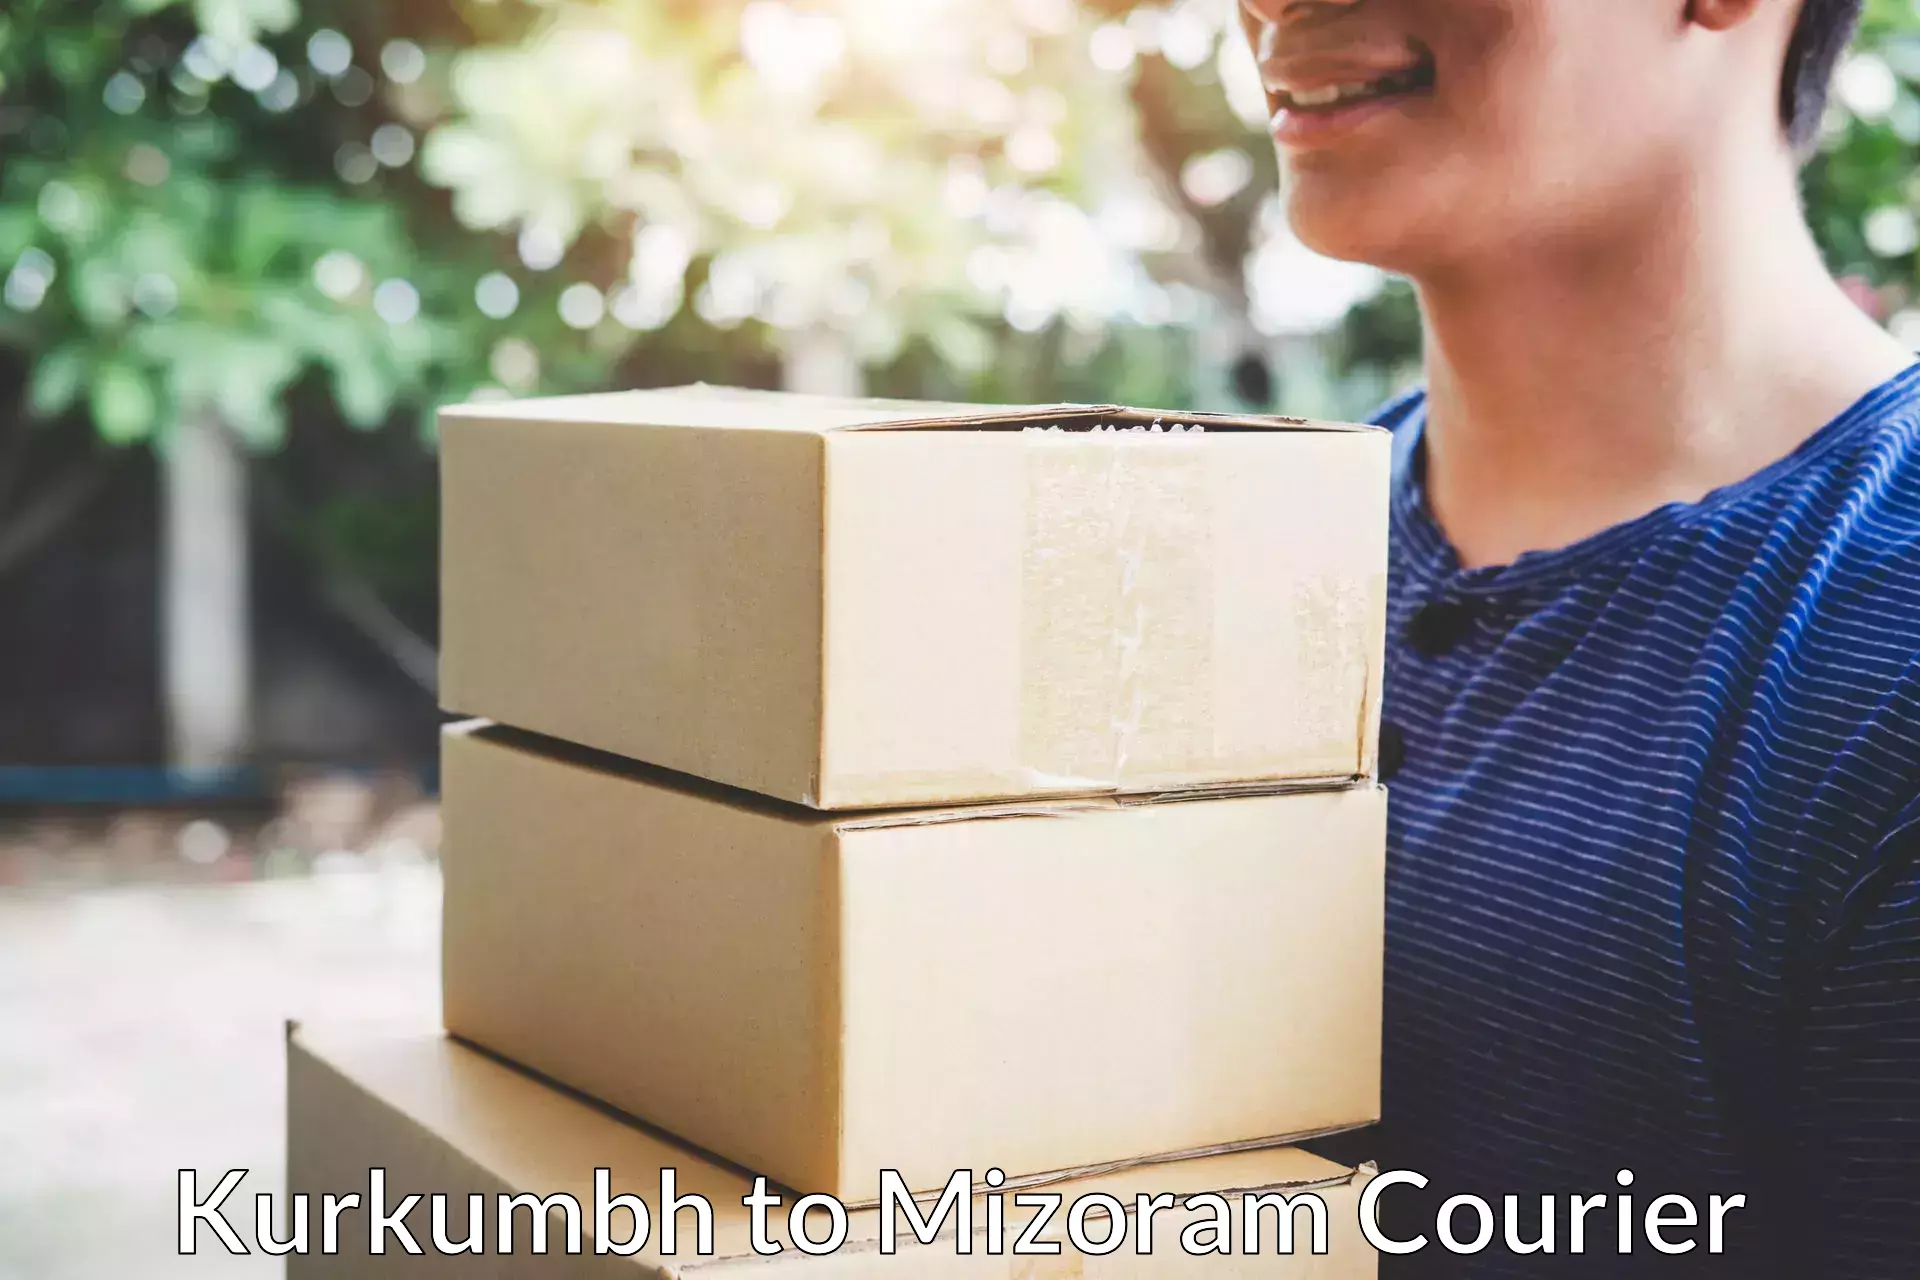 Household goods transporters Kurkumbh to Mizoram